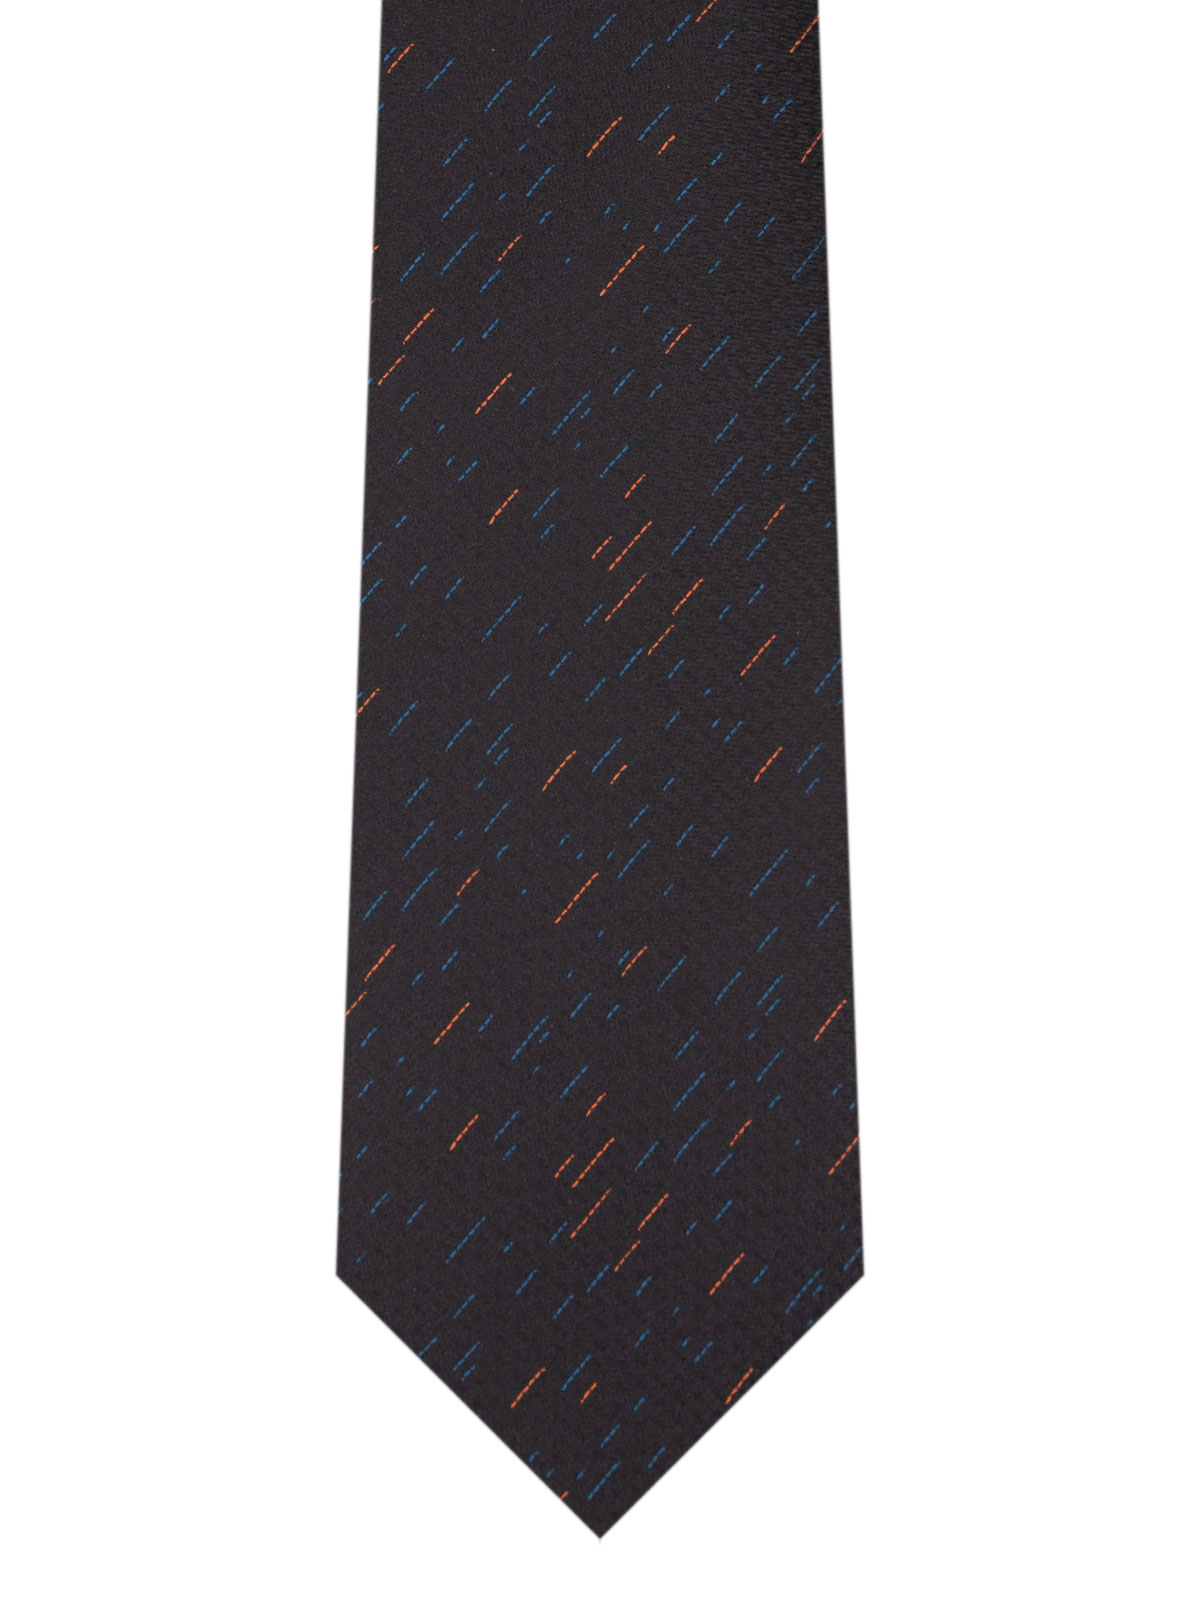 Cravata structurata cu fire colorate - 10172 - € 14.06 img2